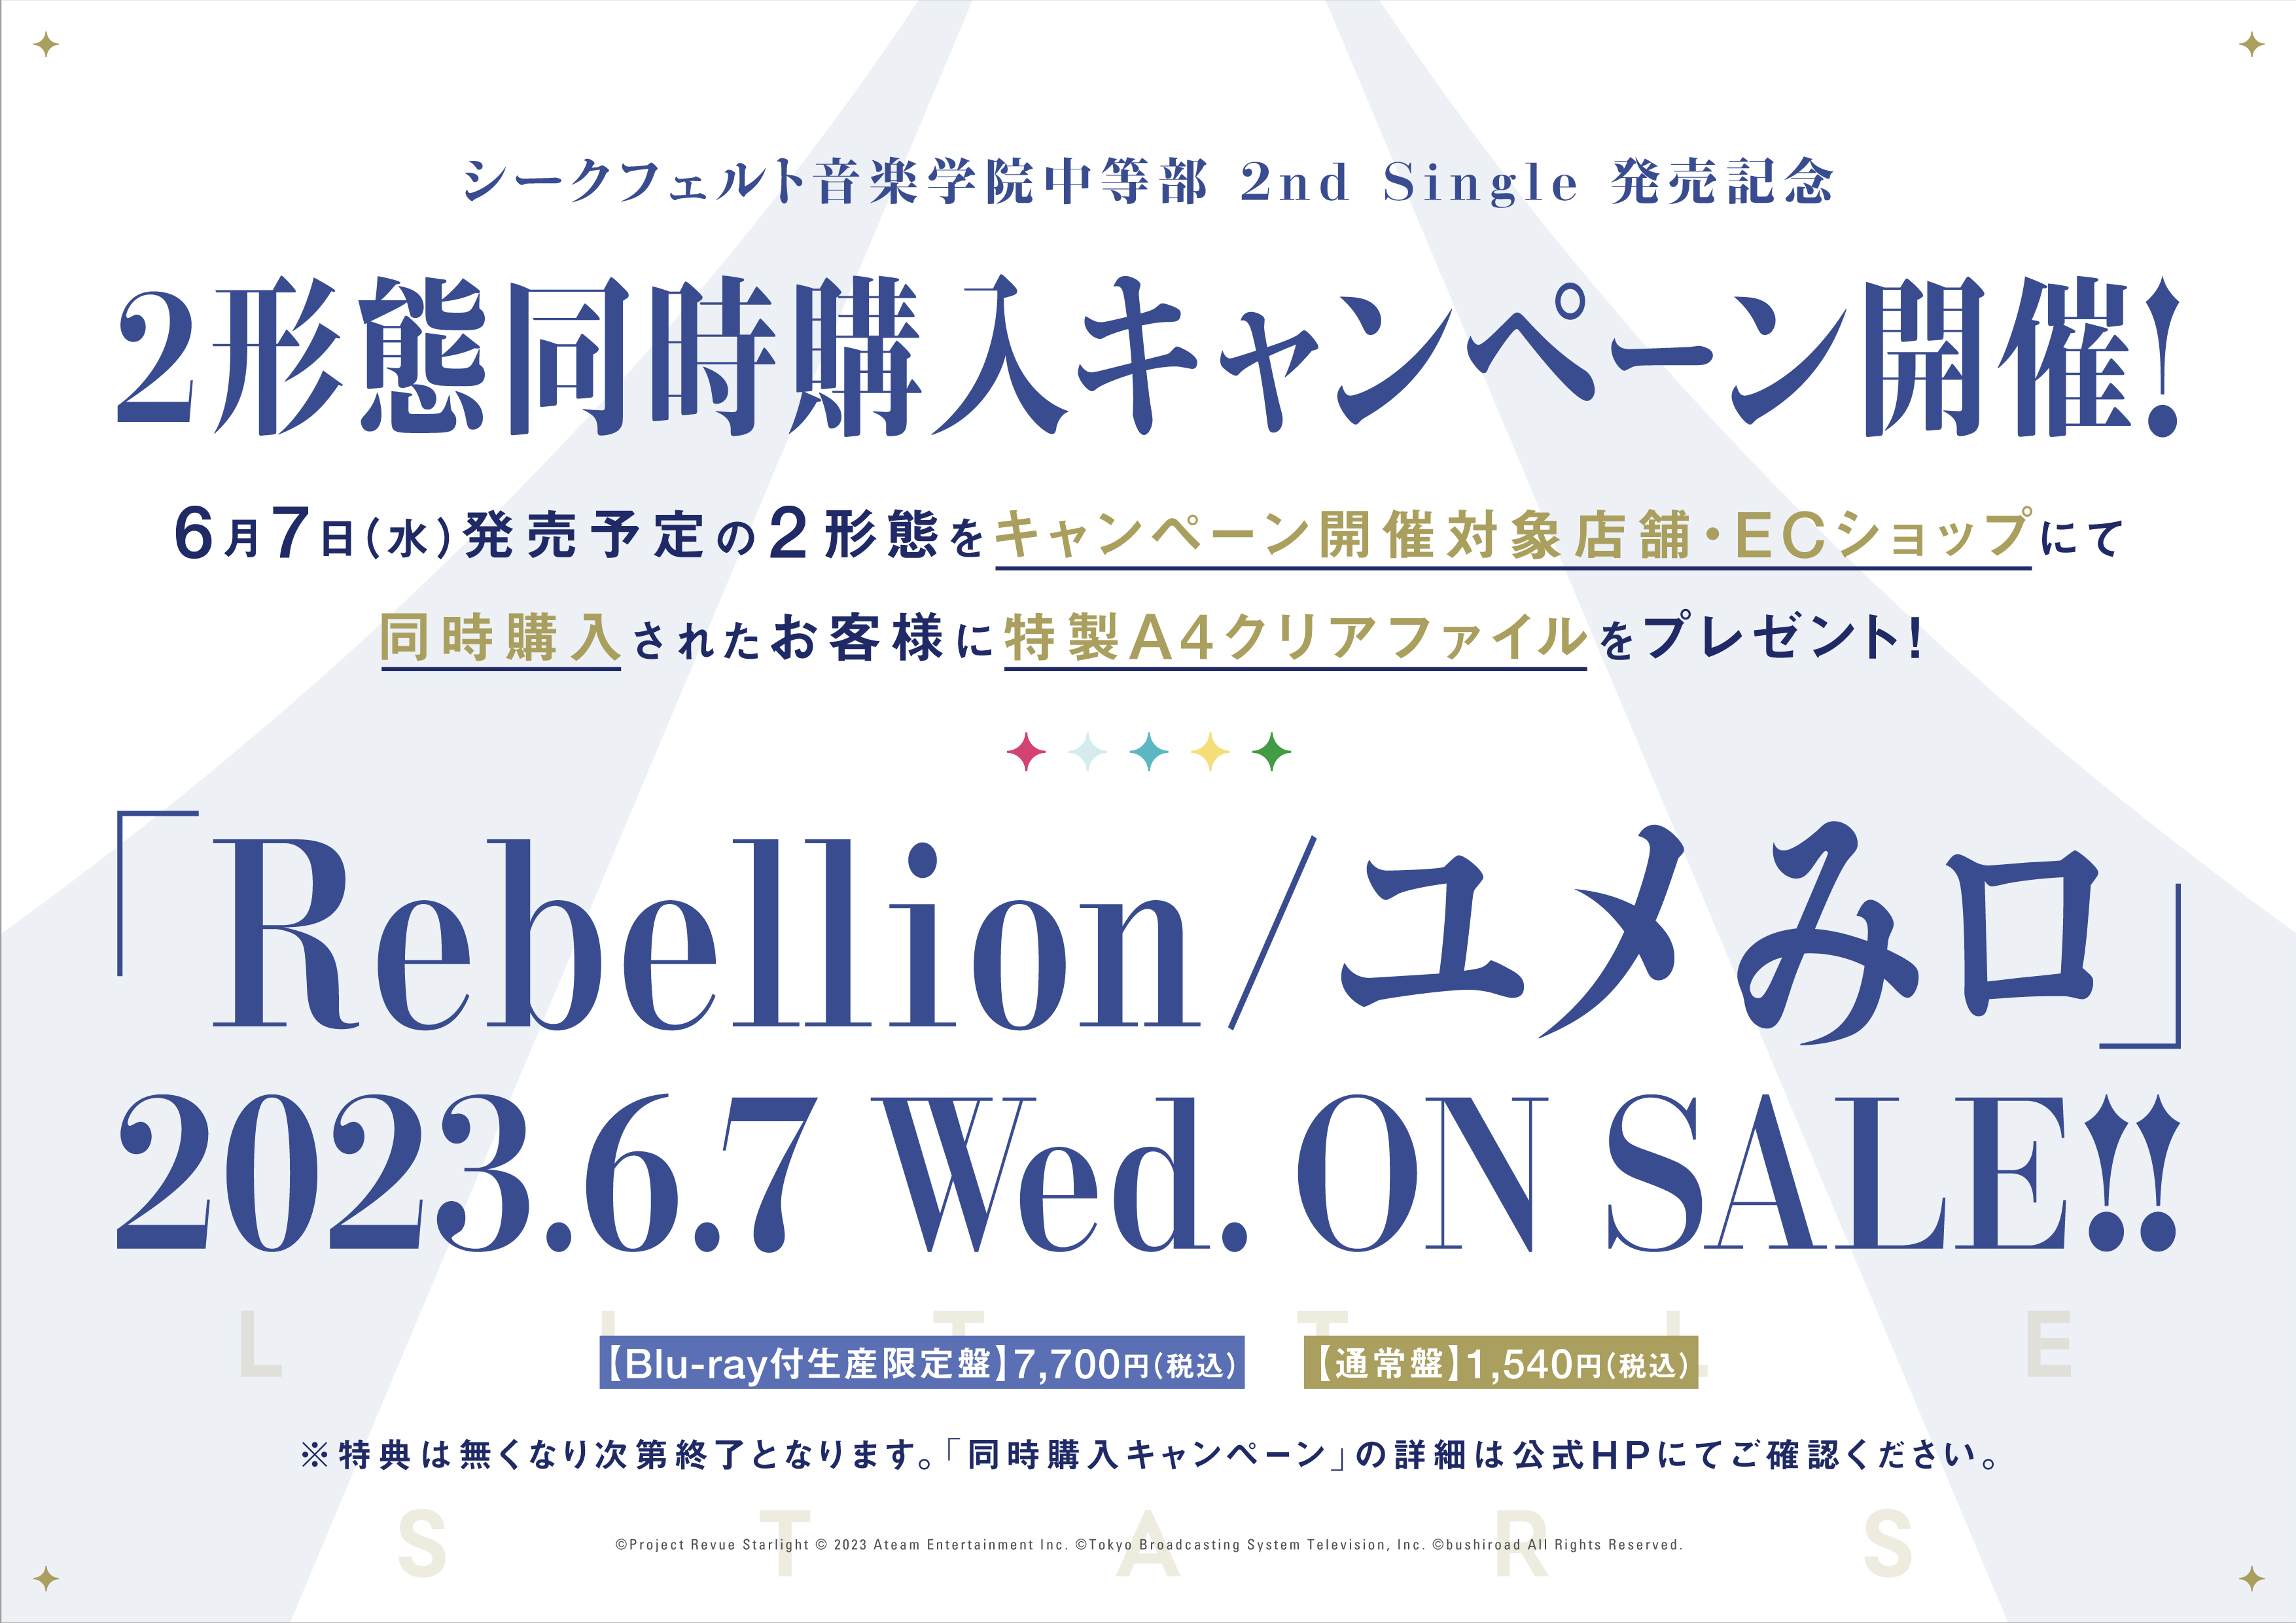 シークフェルト音楽学院中等部 2nd Single「Rebellion/ユメみロ」 発売